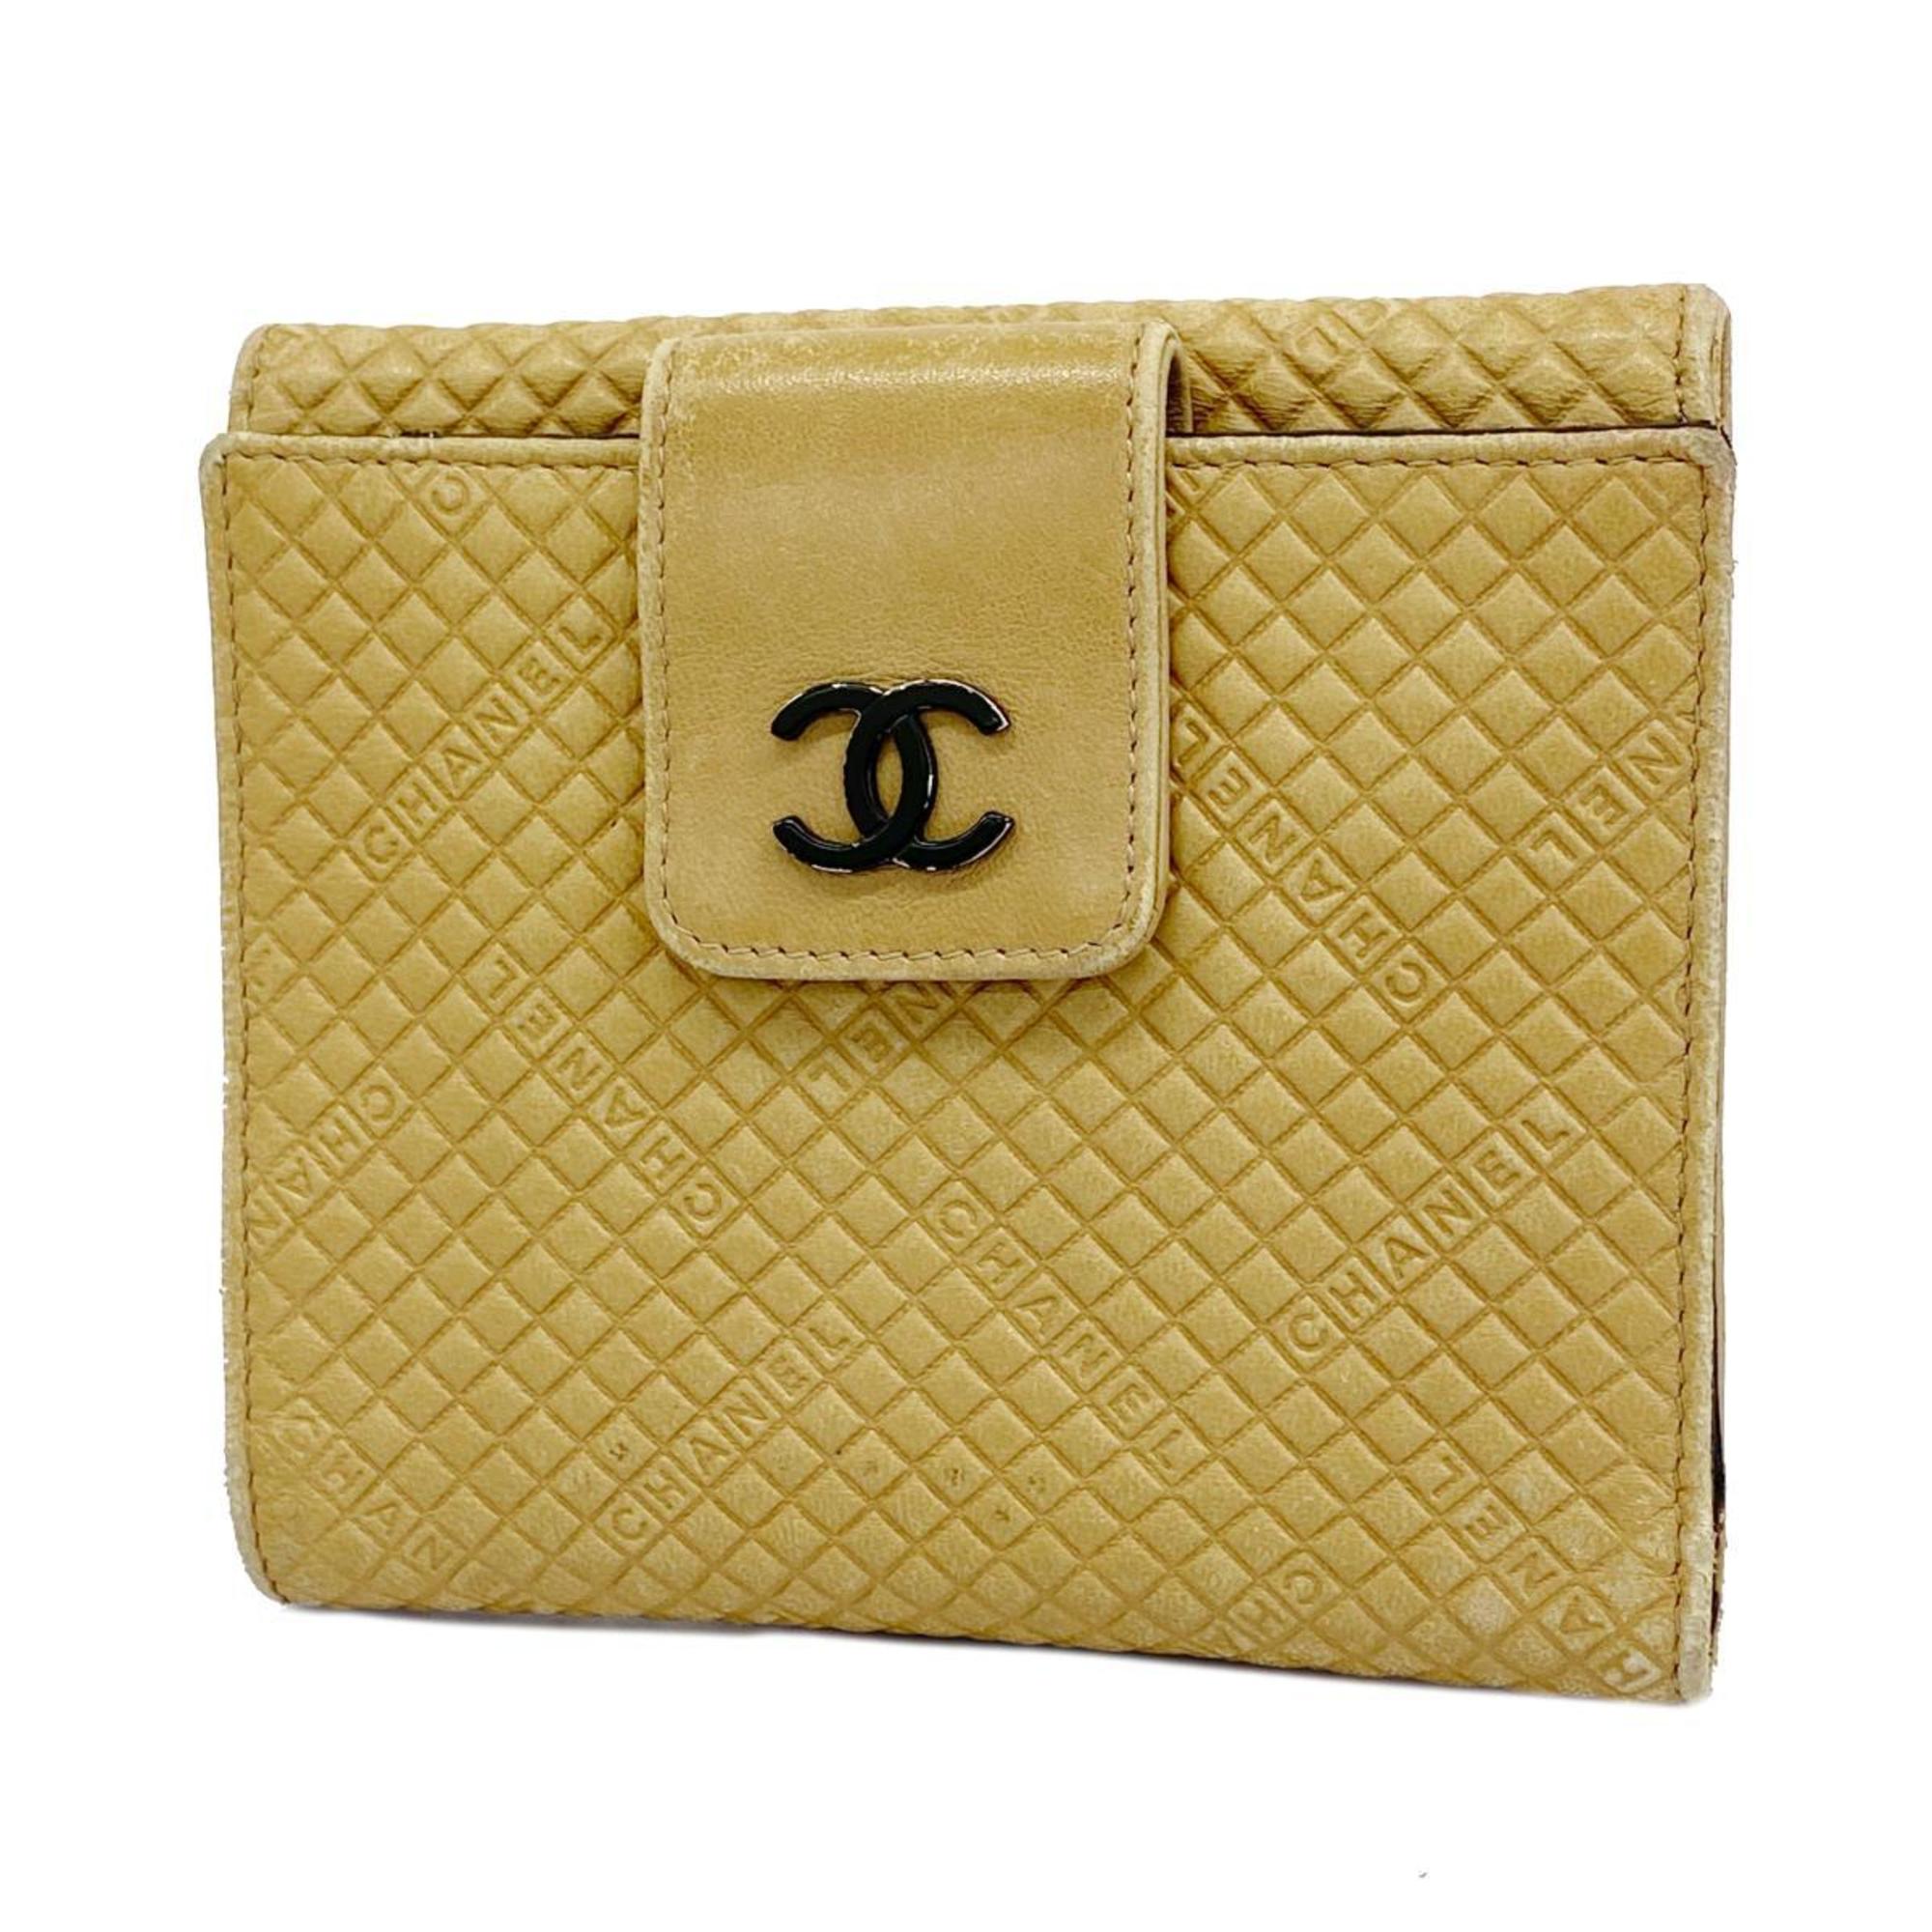 シャネル(Chanel) シャネル 財布 ラムスキン ベージュ レディース 